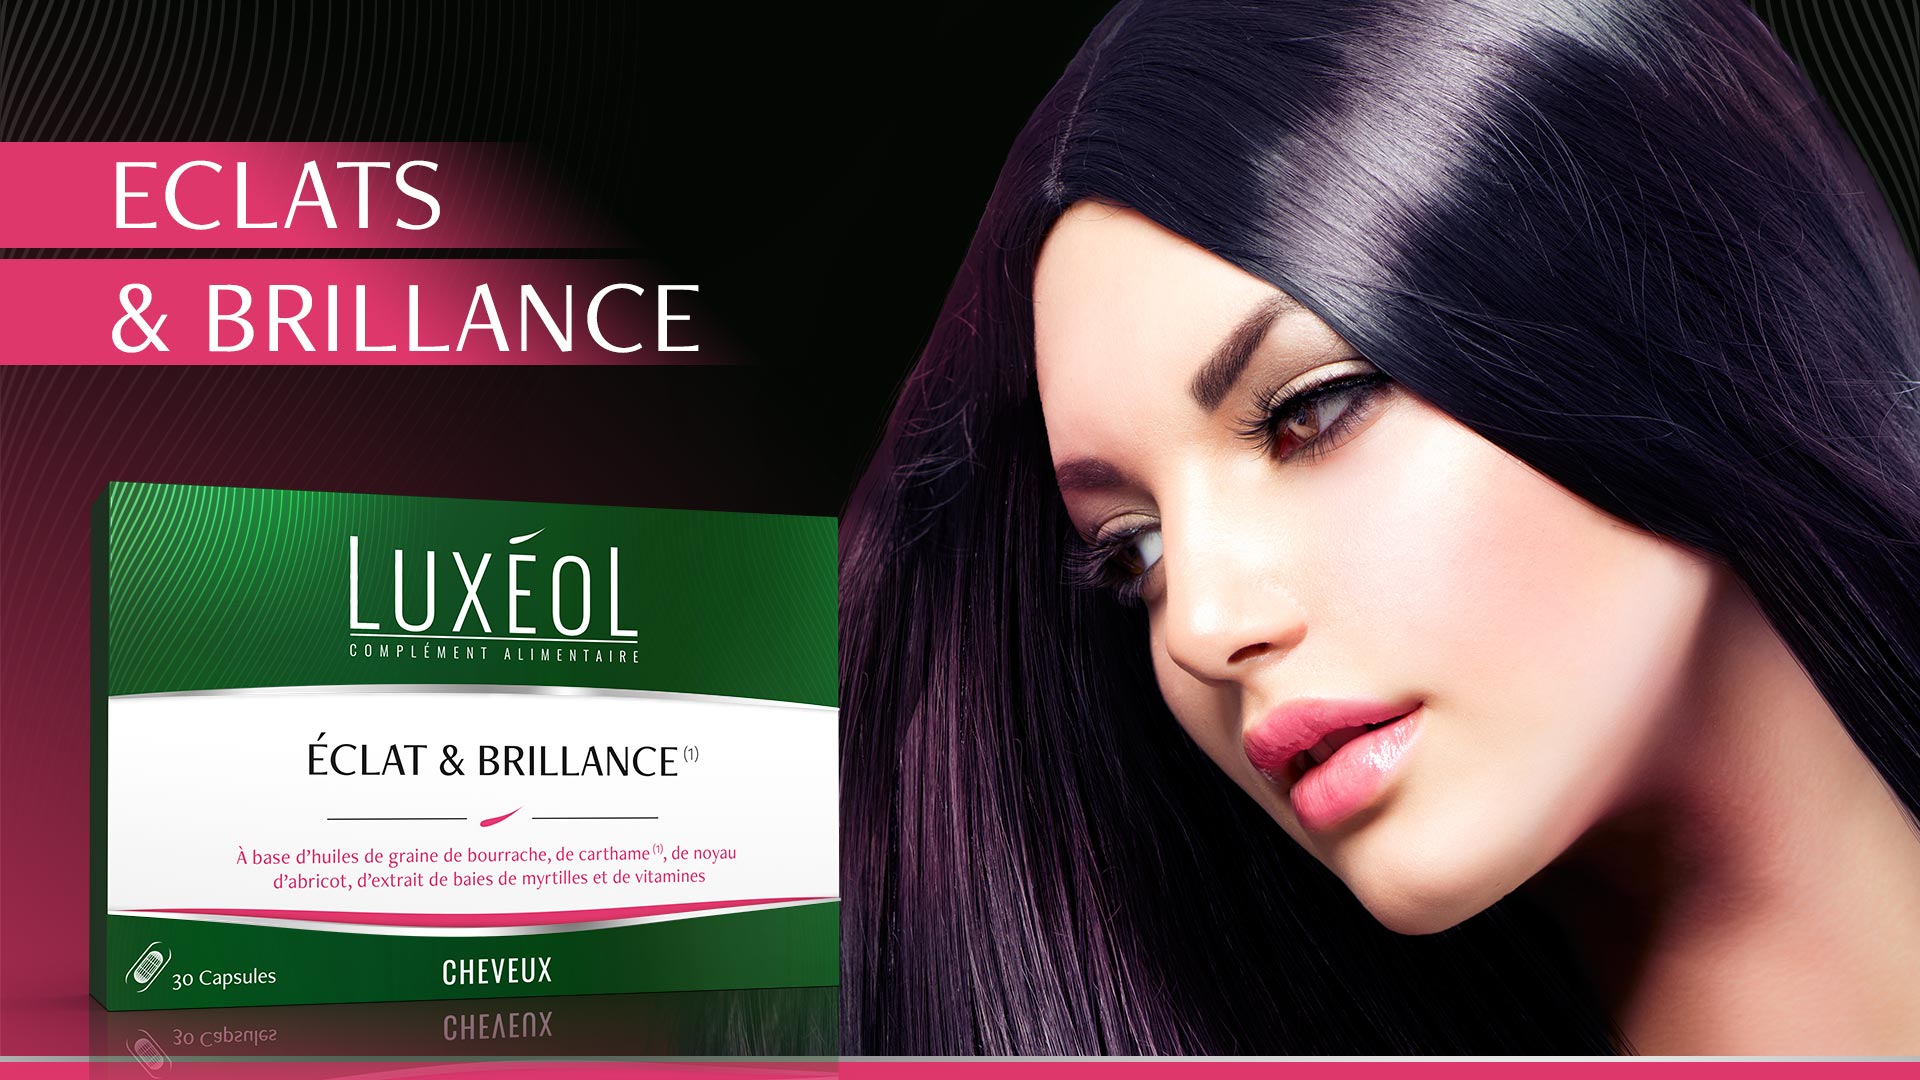 luxeol-eclat-brillance-un-complement-alimentaire-pour-vos-cheveux